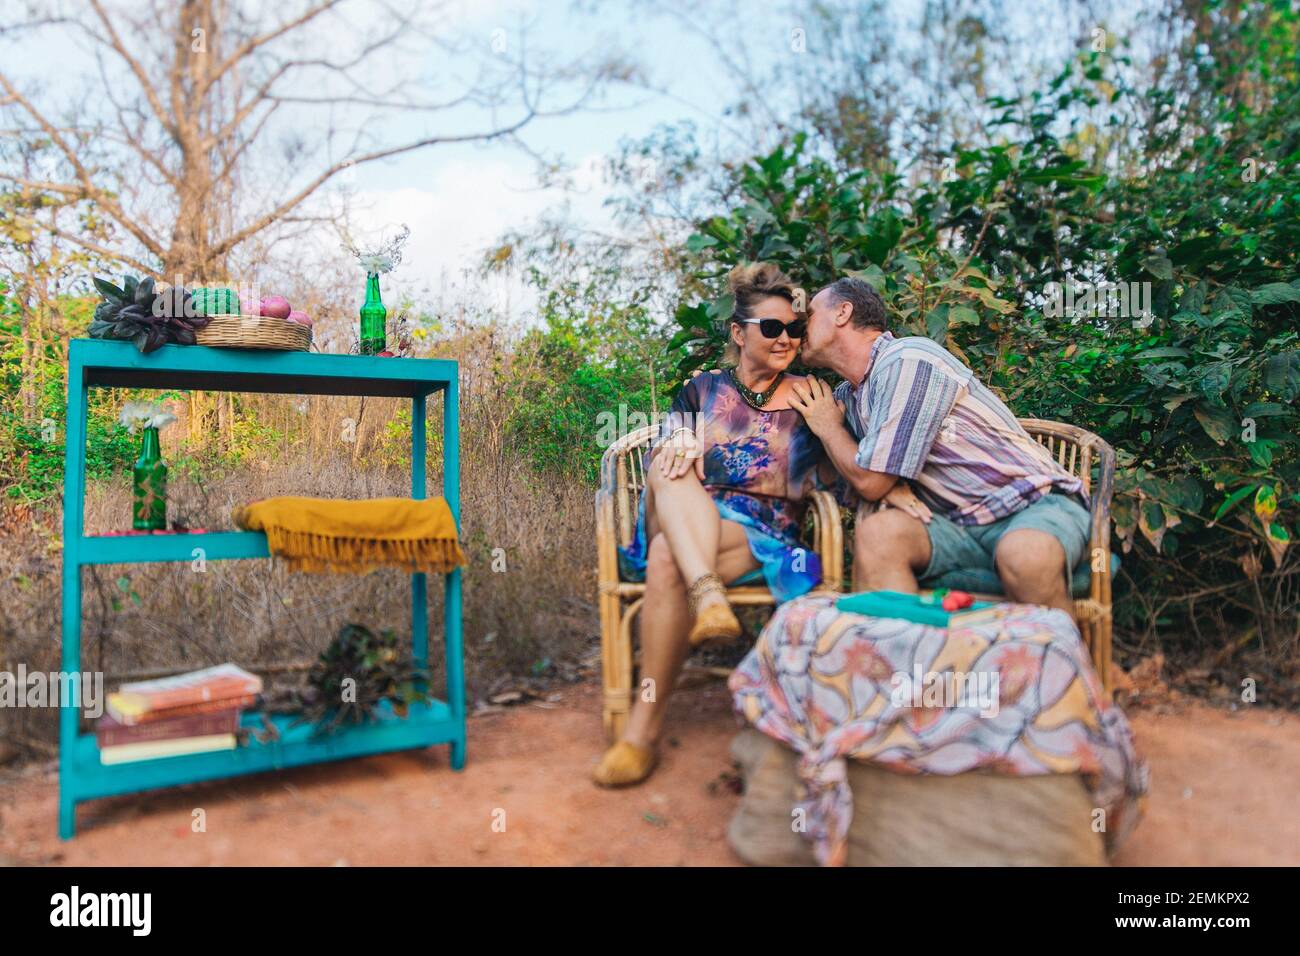 Senioren zusammen Paar im Urlaub Umarmung Glück Beziehung Dating Konzept Urlaub Romantik indien goa Stockfoto